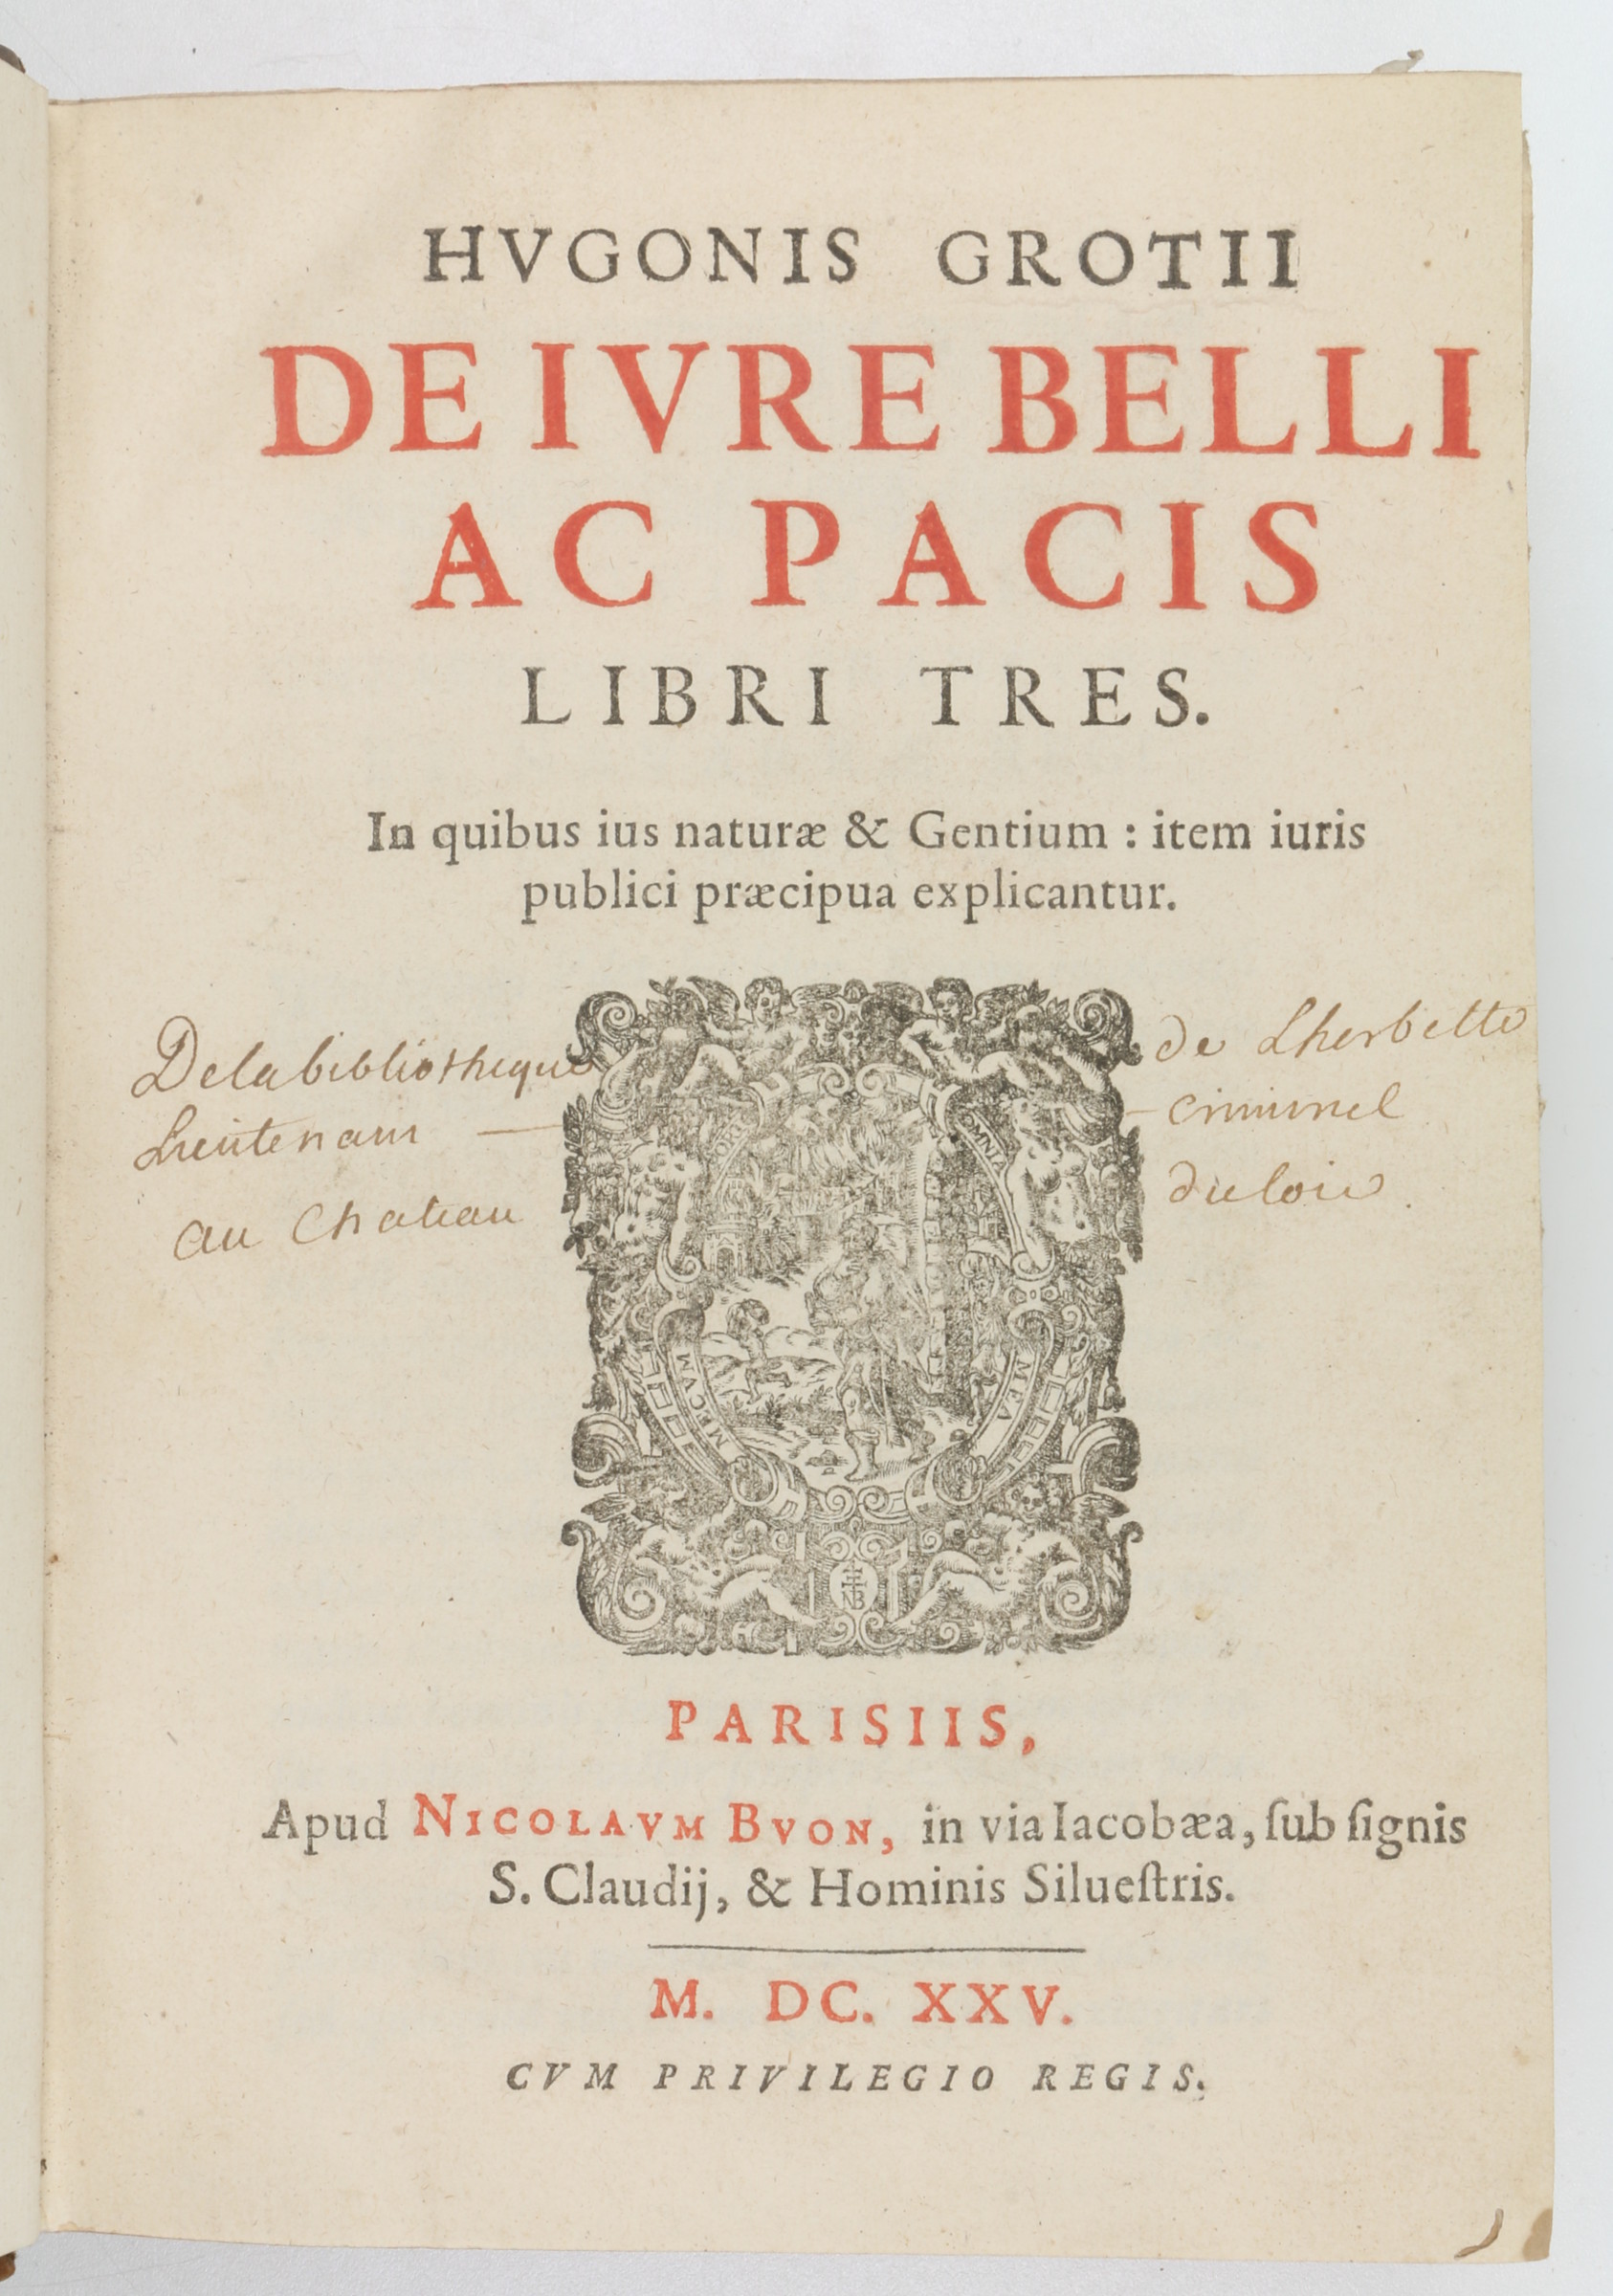 Sold] Grotius, Hugo. De belli ac pacis libri tres. In quibus ius naturae Antiquariat INLIBRIS Gilhofer Nfg.